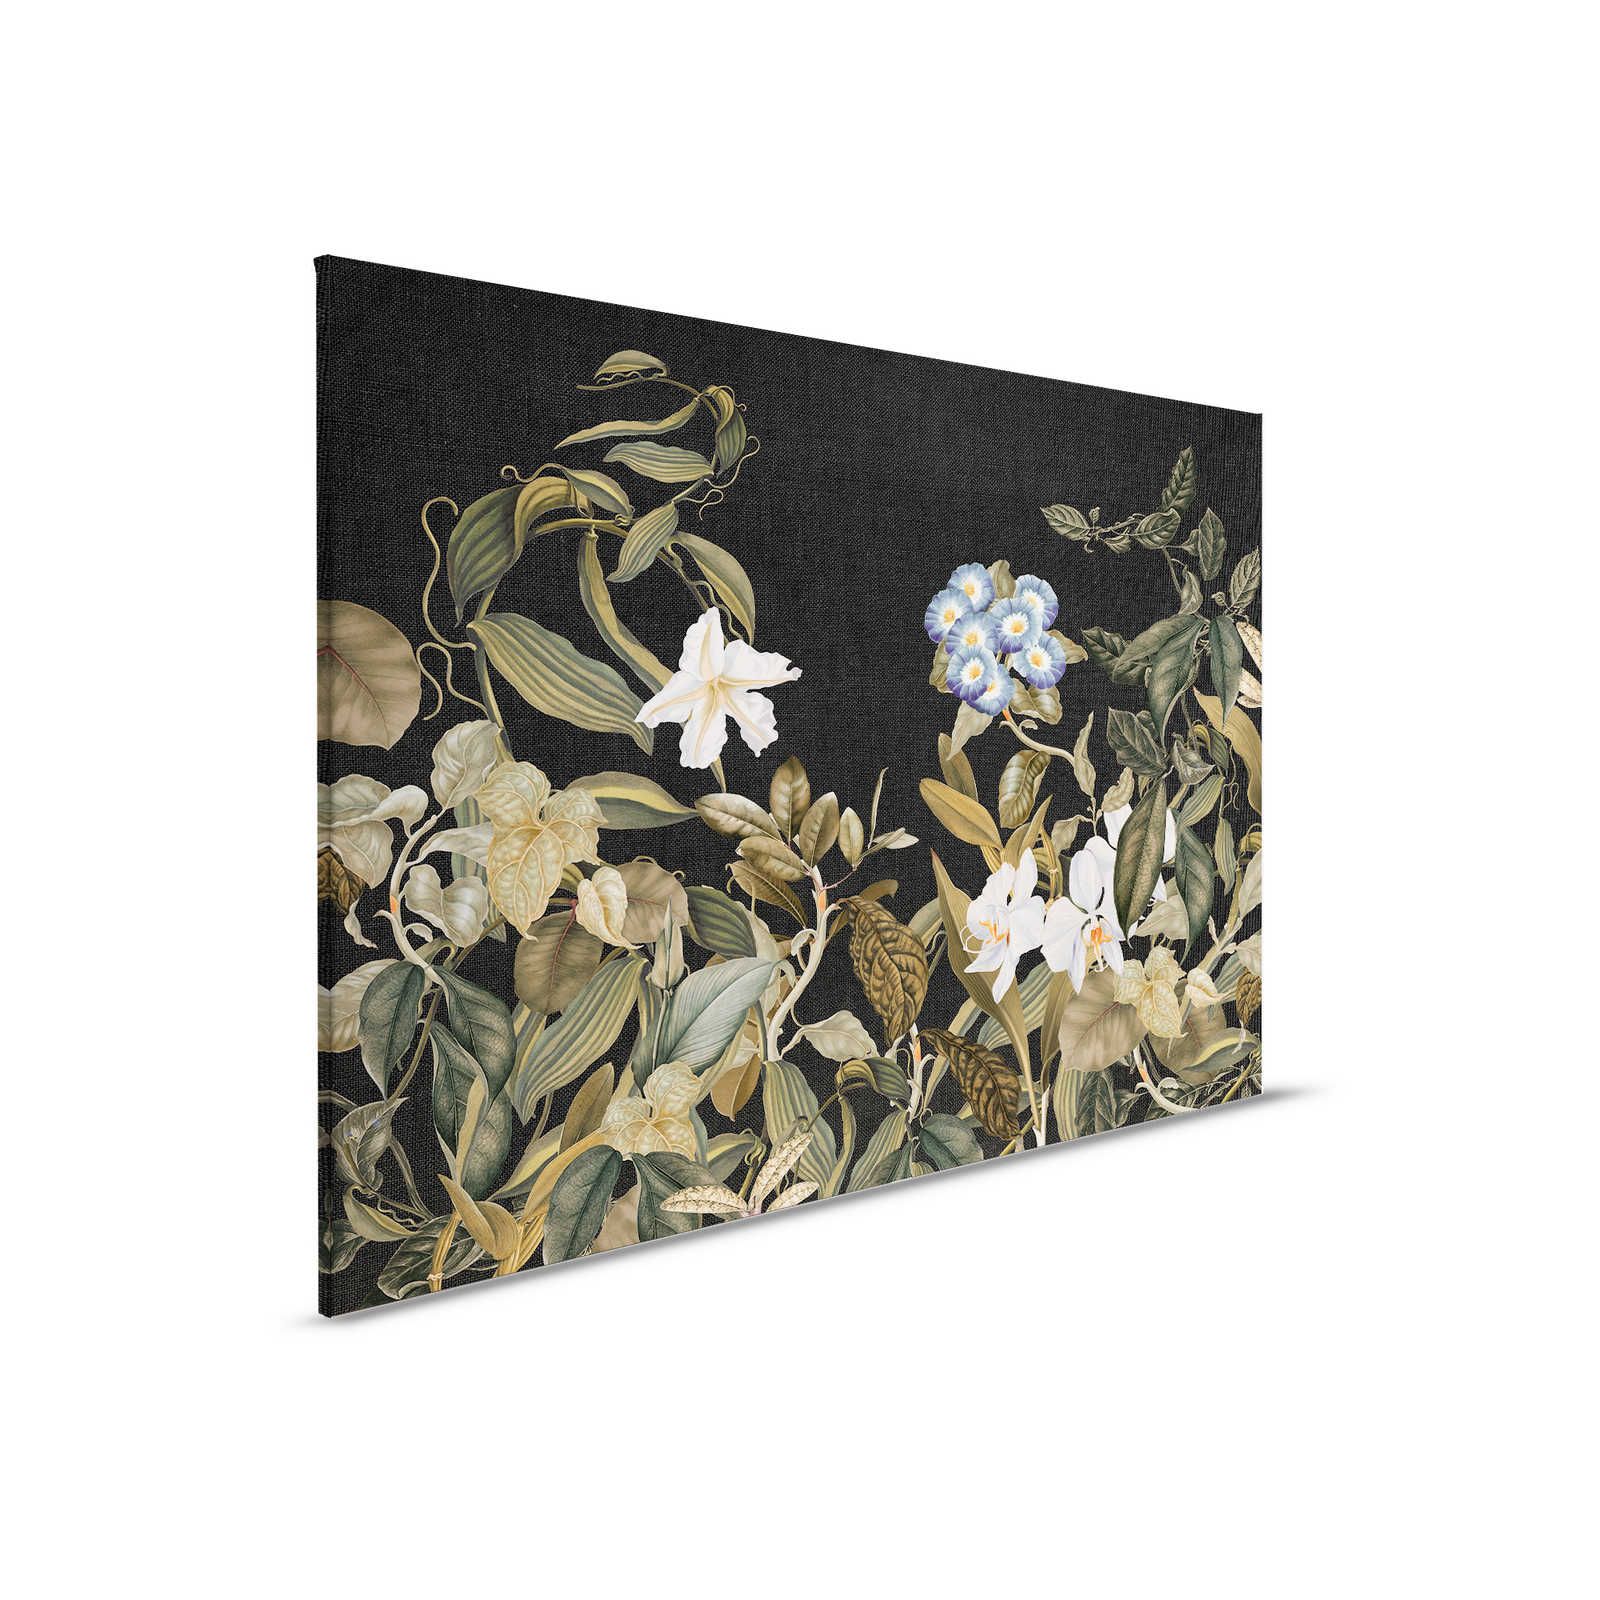 Botanical Leinwandbild mit Orchideen & Blätter-Motiv – 0,90 m x 0,60 m
